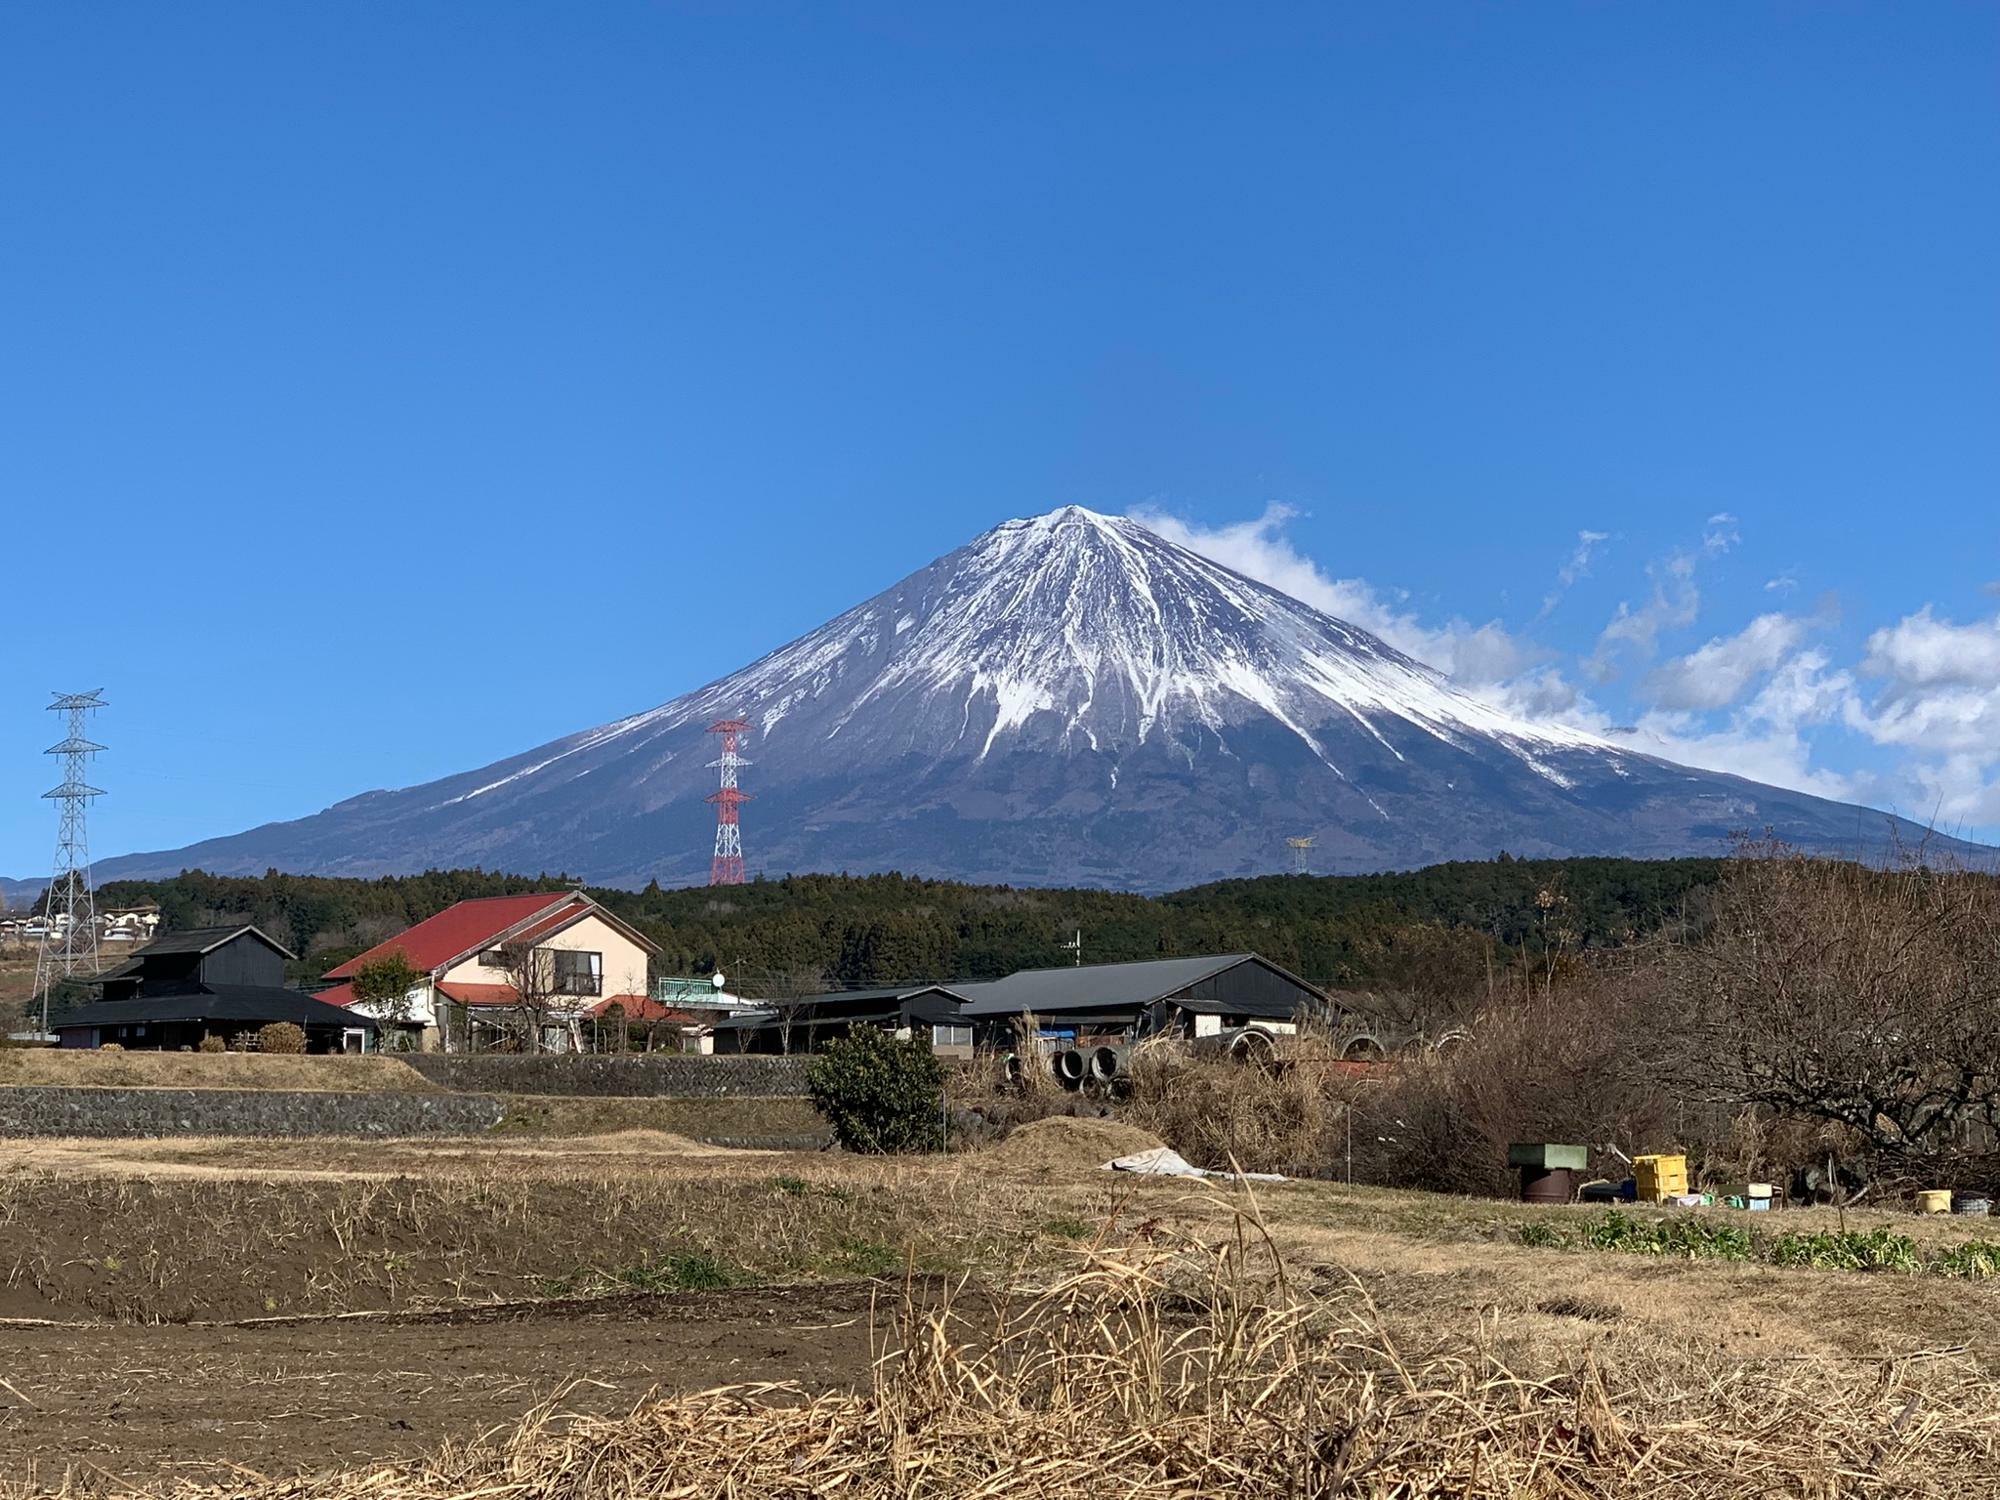 田園風景の中に富士山が映えます